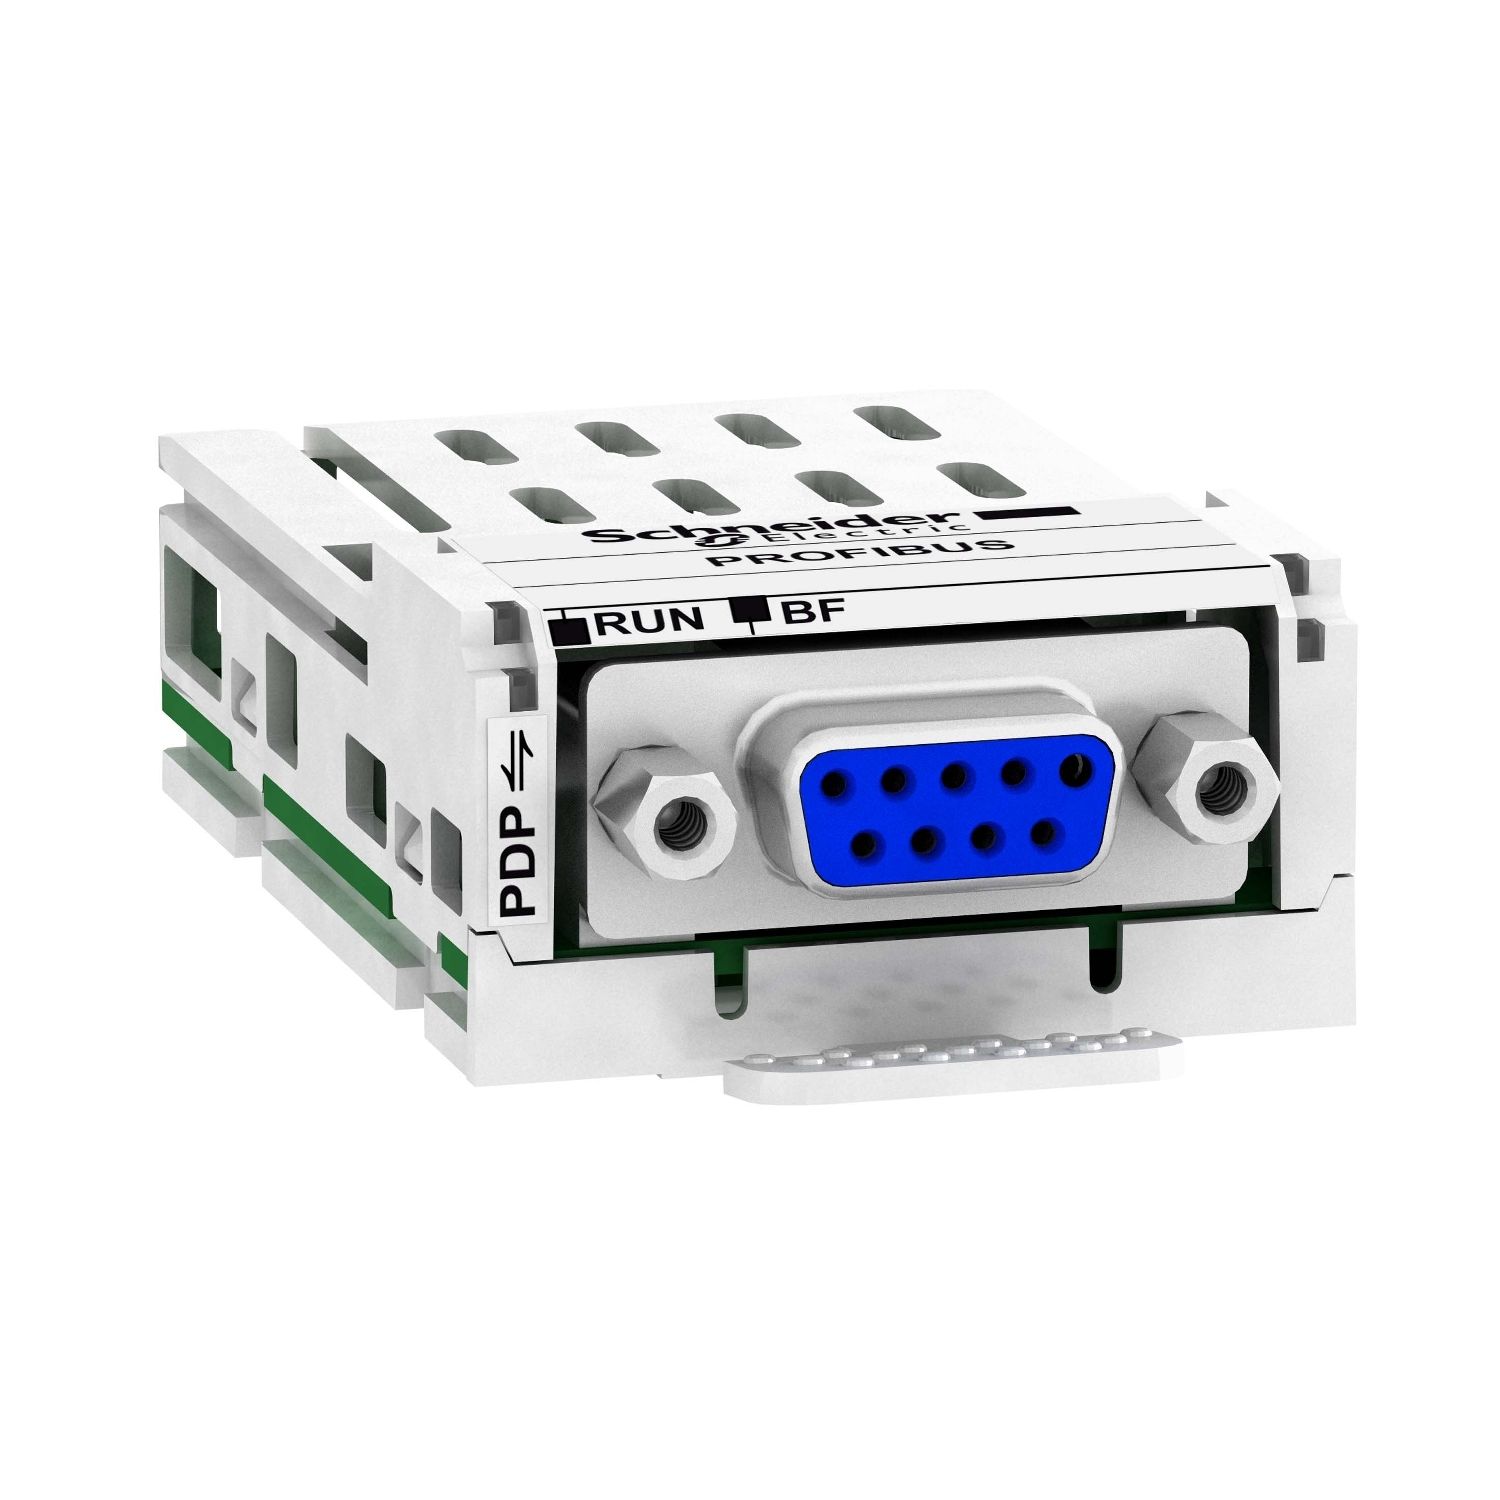 VW3A3607 communication module Profibus DP V1, Altivar, 12Mbps, 1 female SUB D9 connector